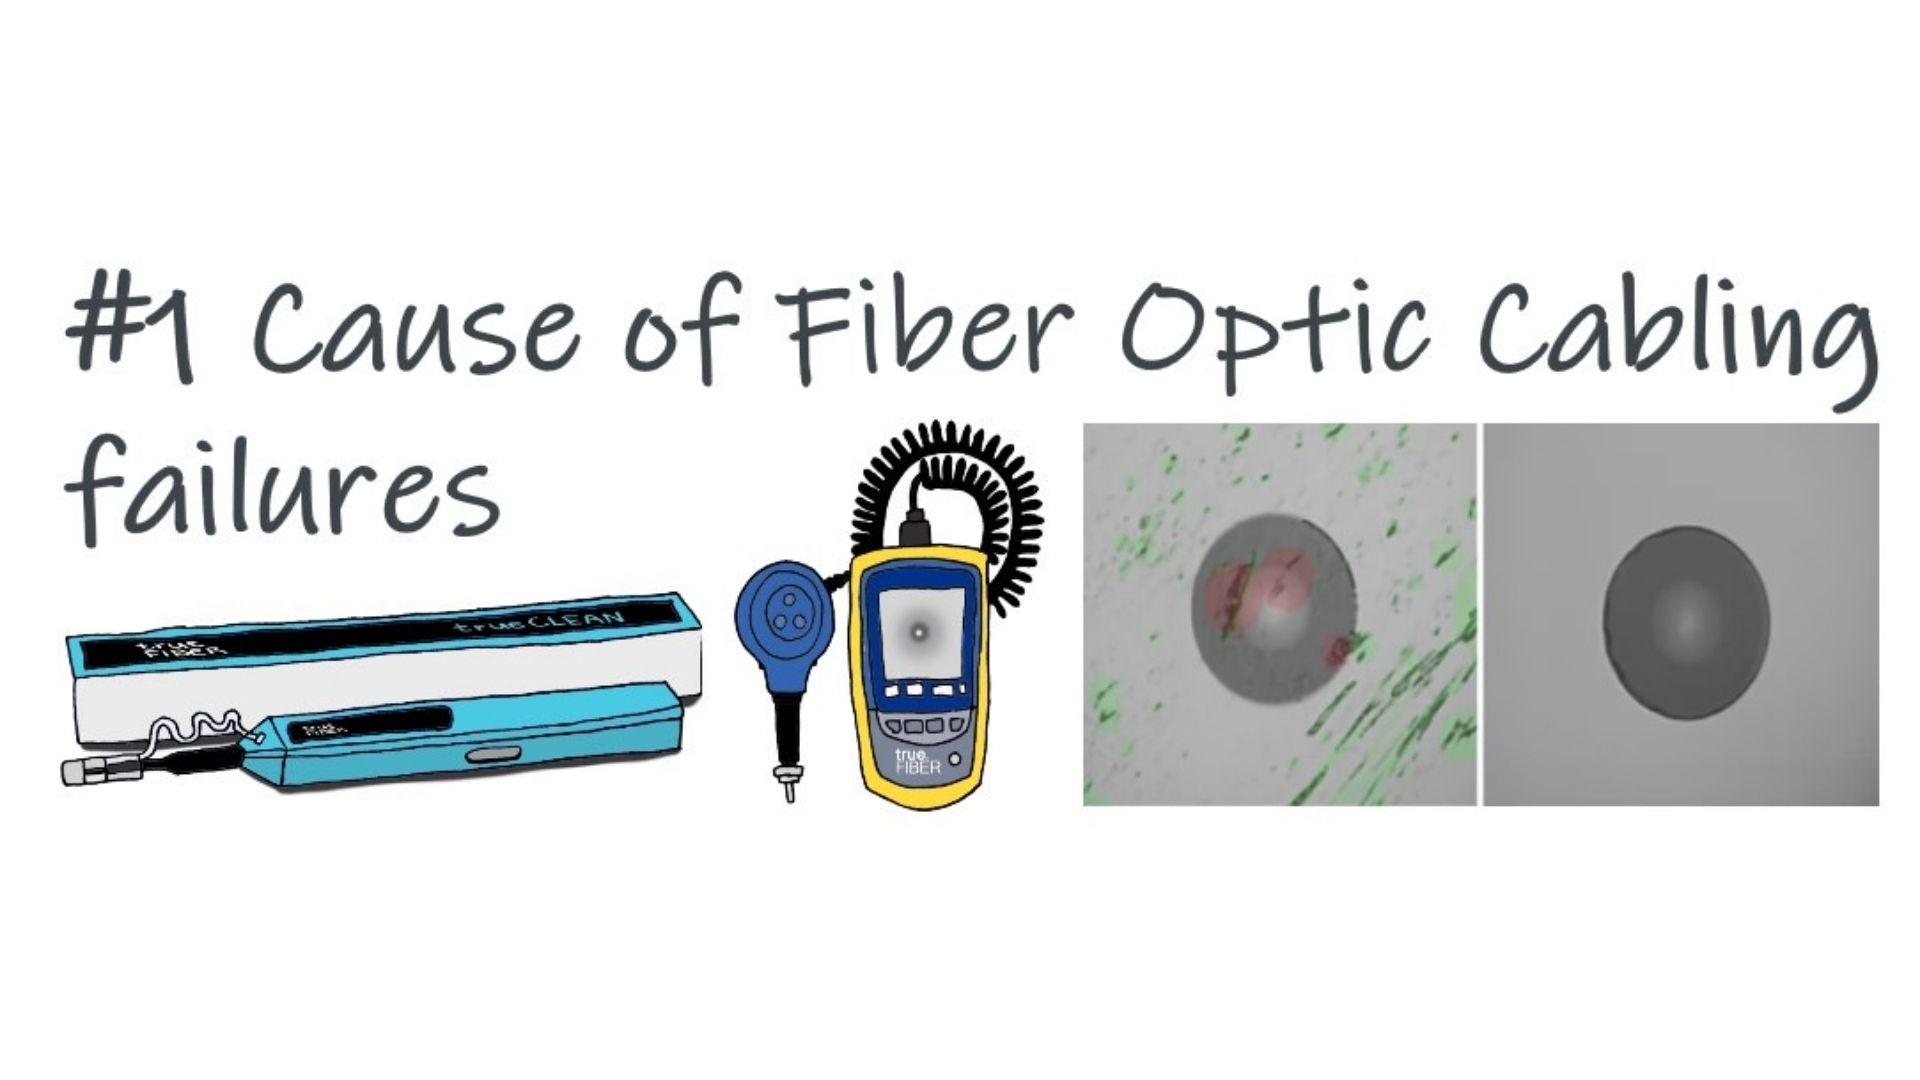 #1 Cause of Fiber Optic Cabling Failures